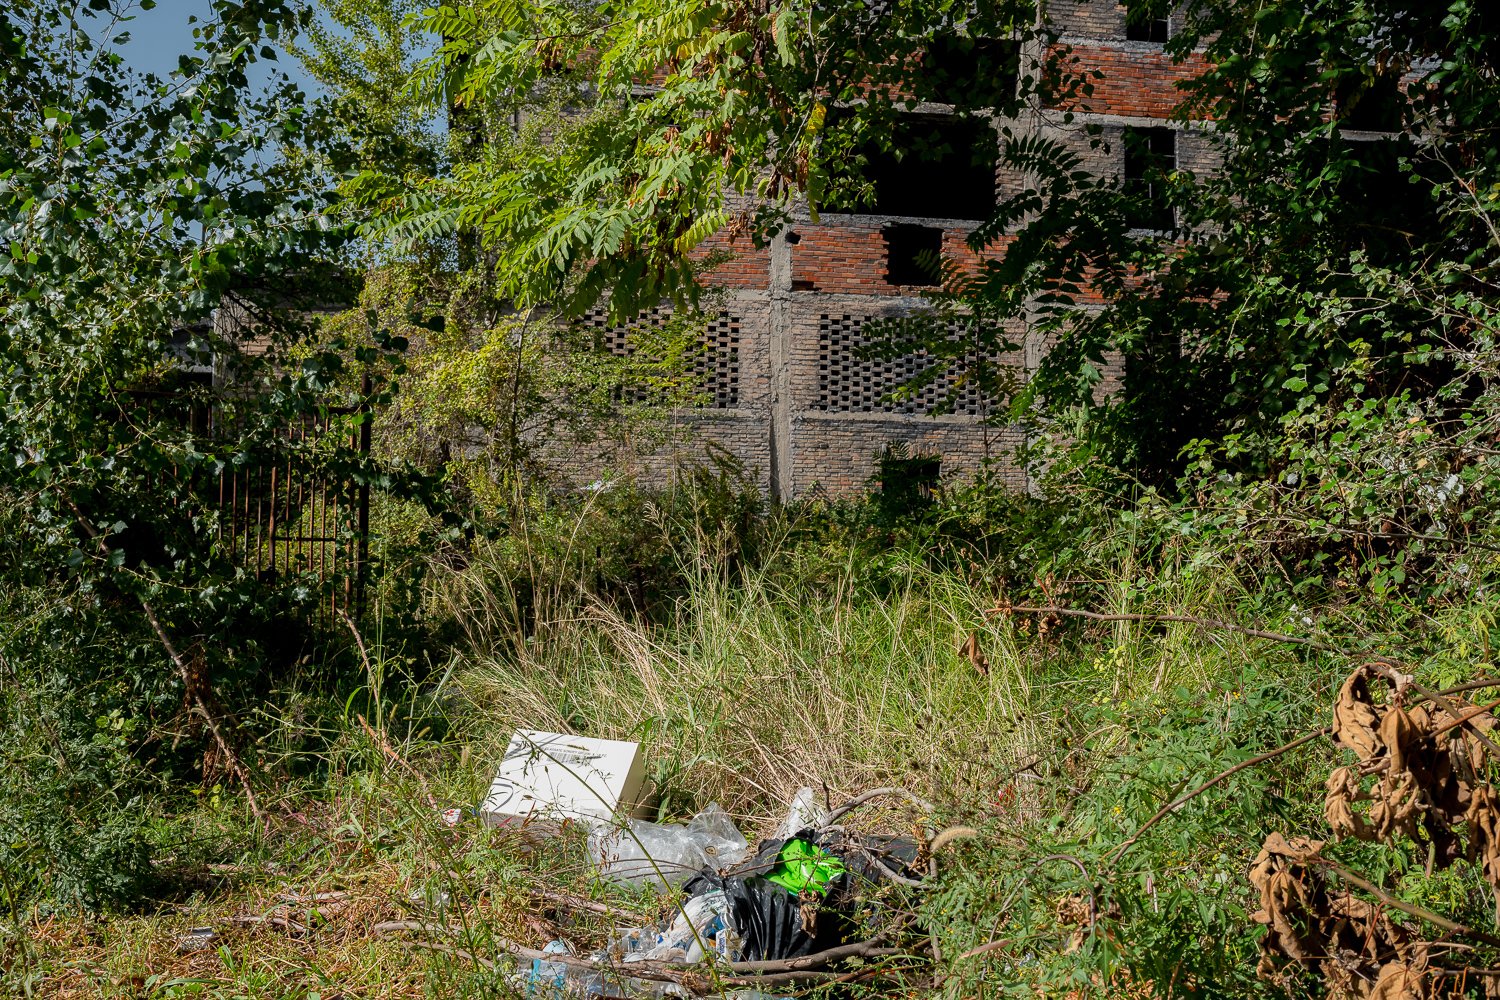  Le zone abbandonate sono diventati luoghi di discarica dove i cittadini irresponsabili scaricano i propri rifiuti mentre la natura vorrebbe riprenderne possesso.Papigno (Terni), 2022 